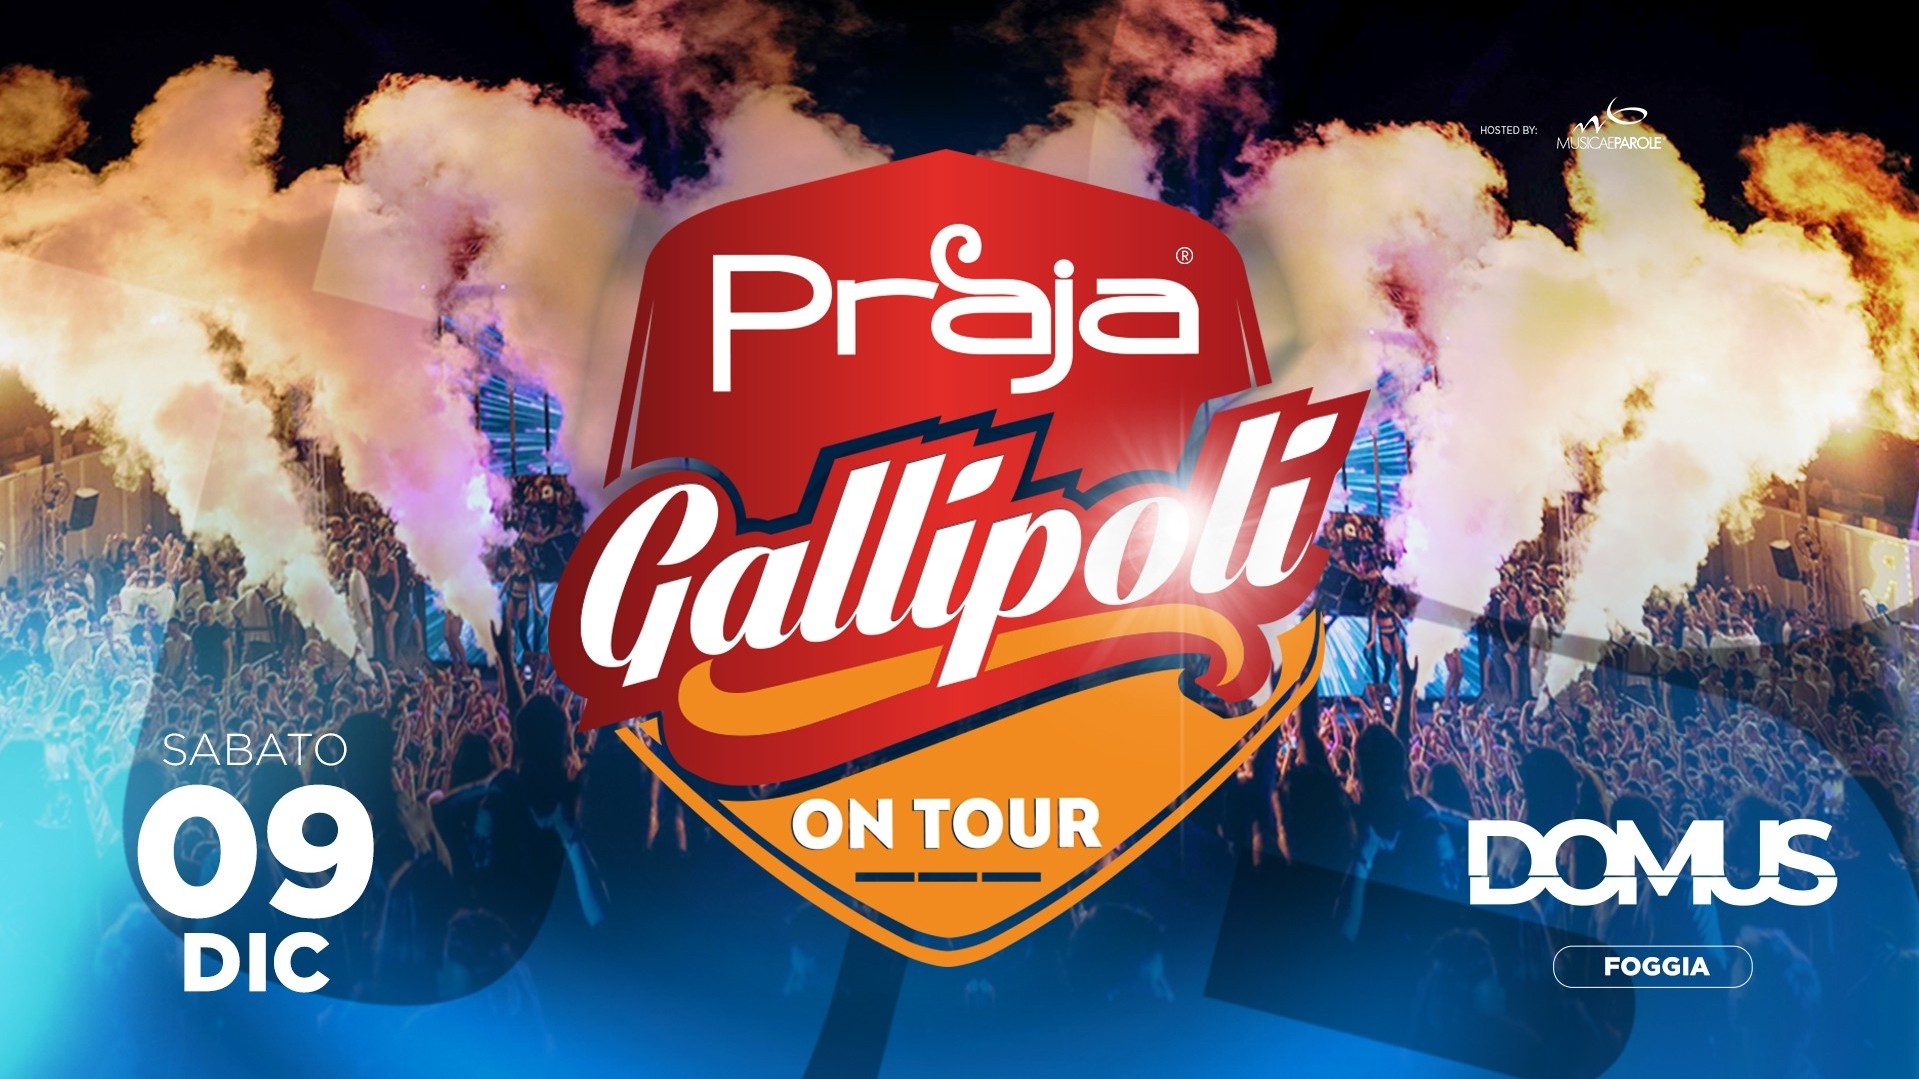 Praja Gallipoli® on Tour